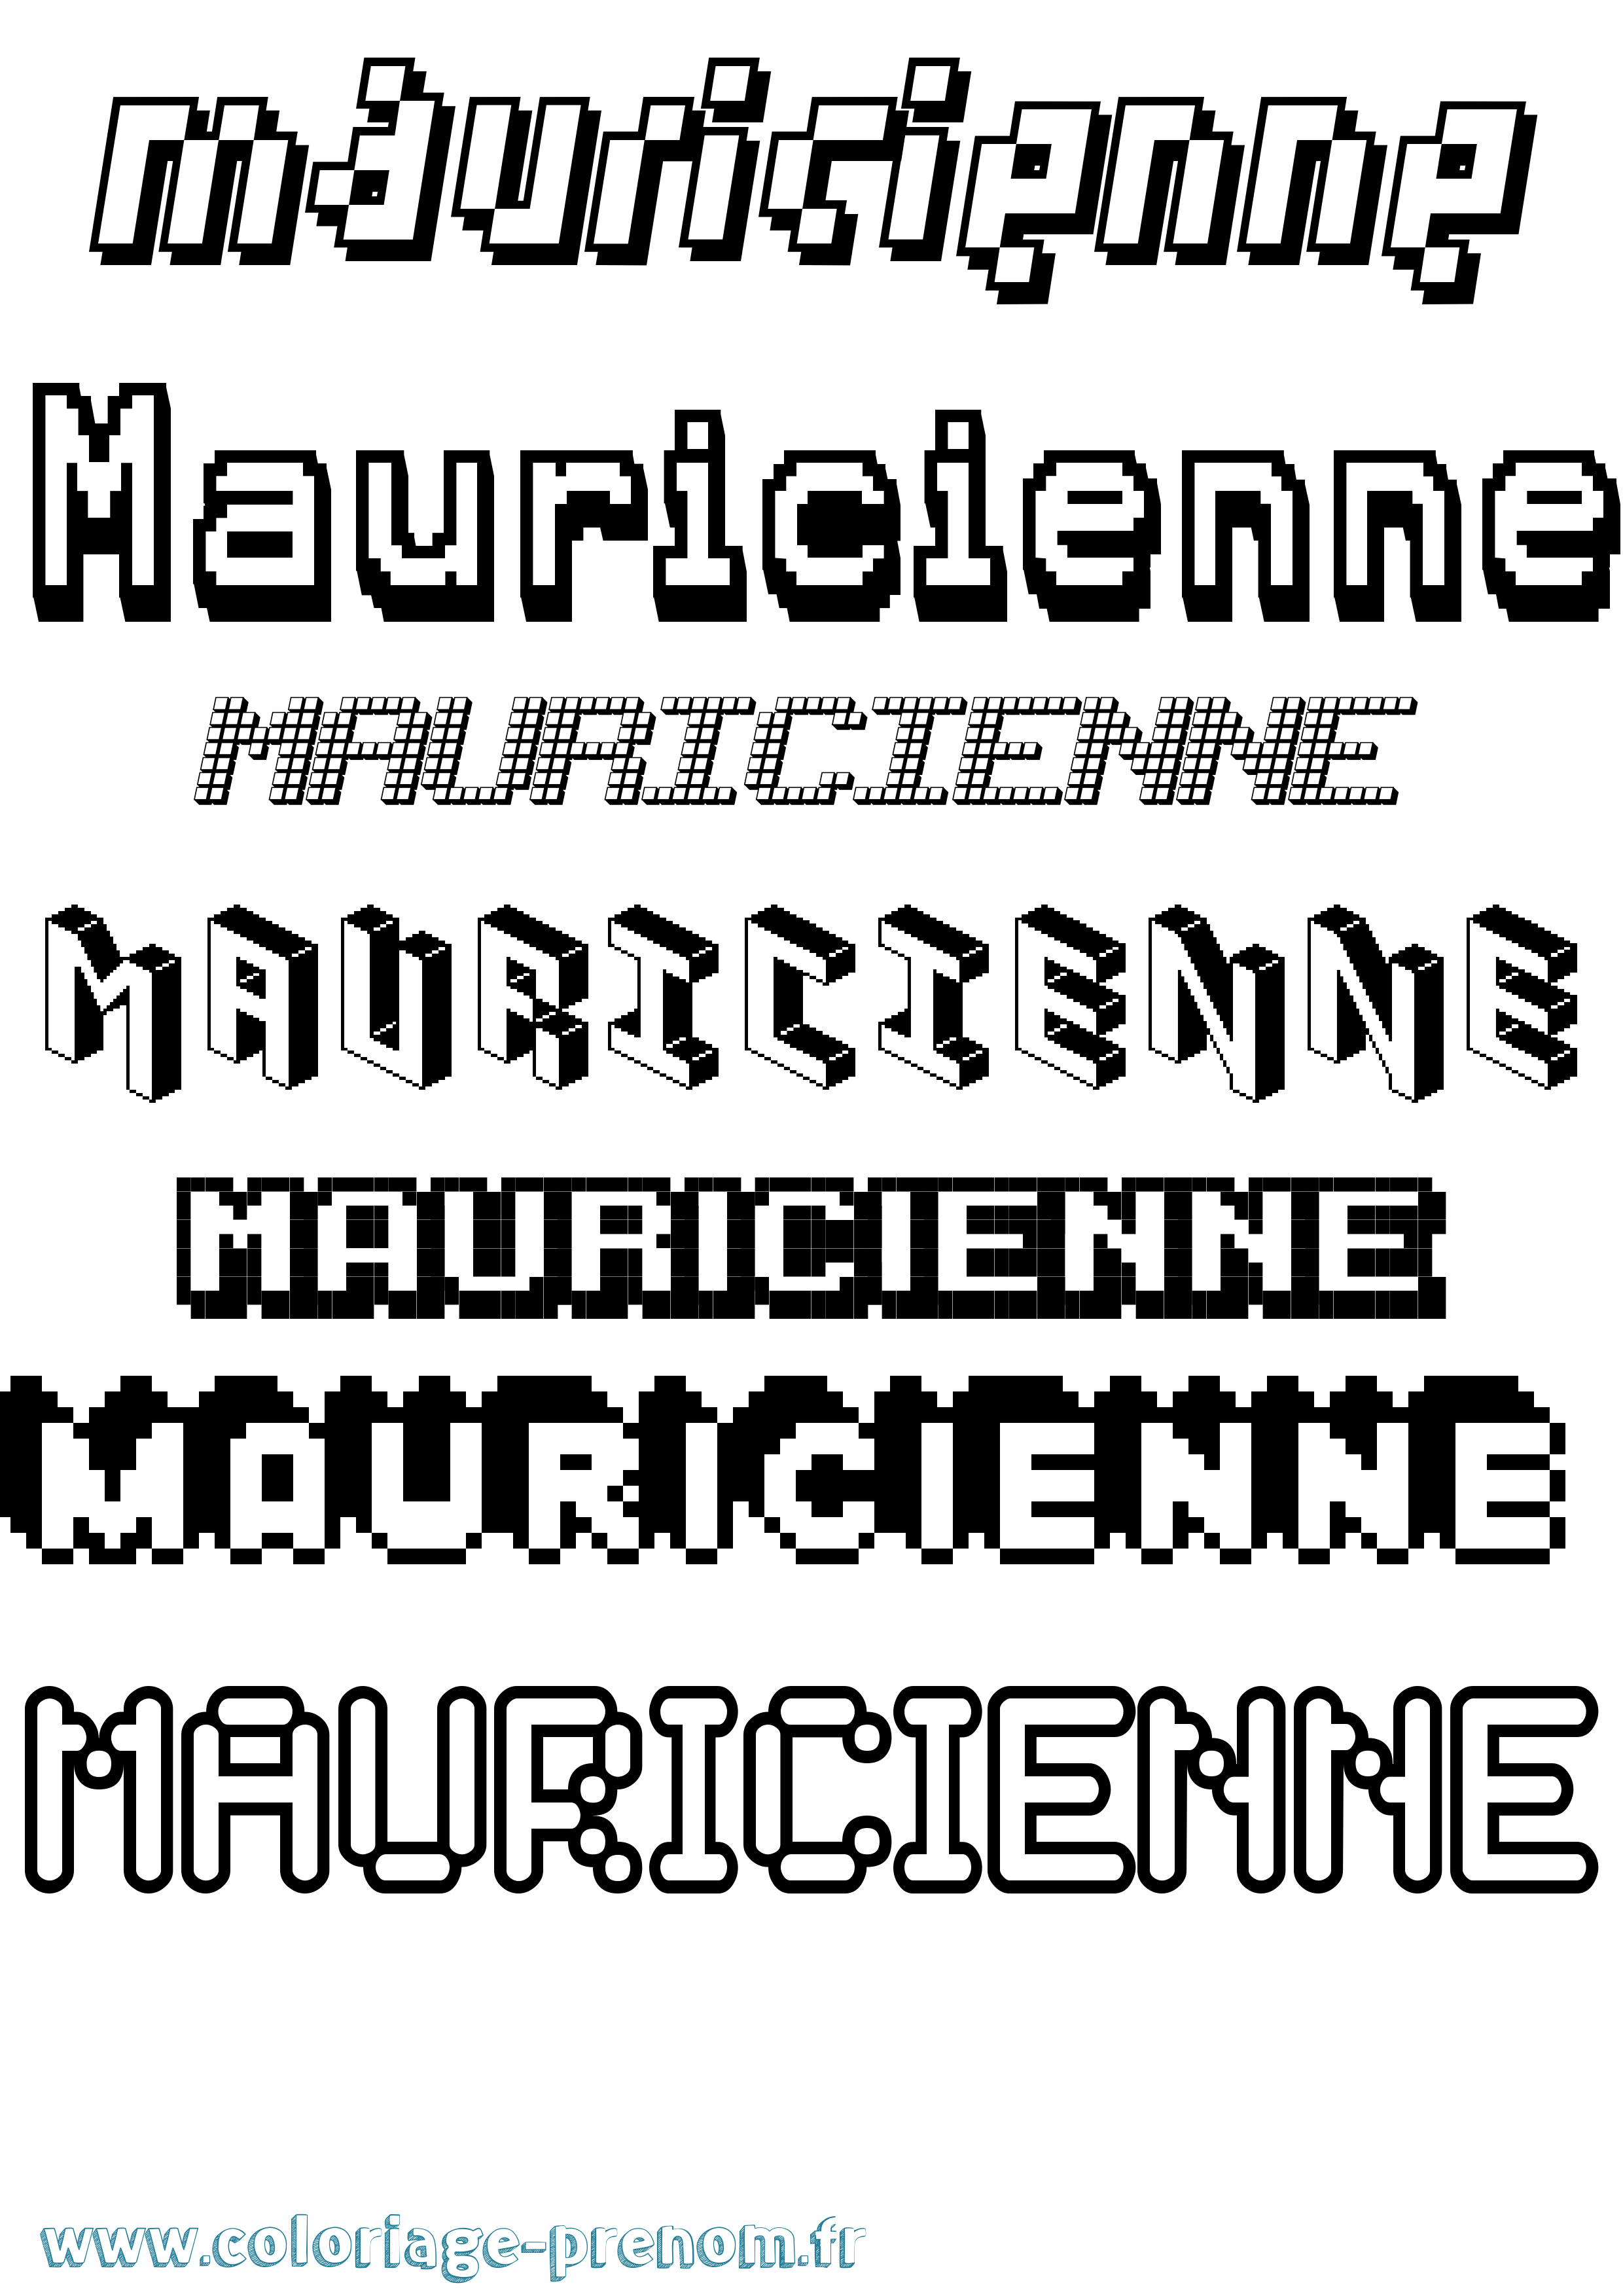 Coloriage prénom Mauricienne Pixel